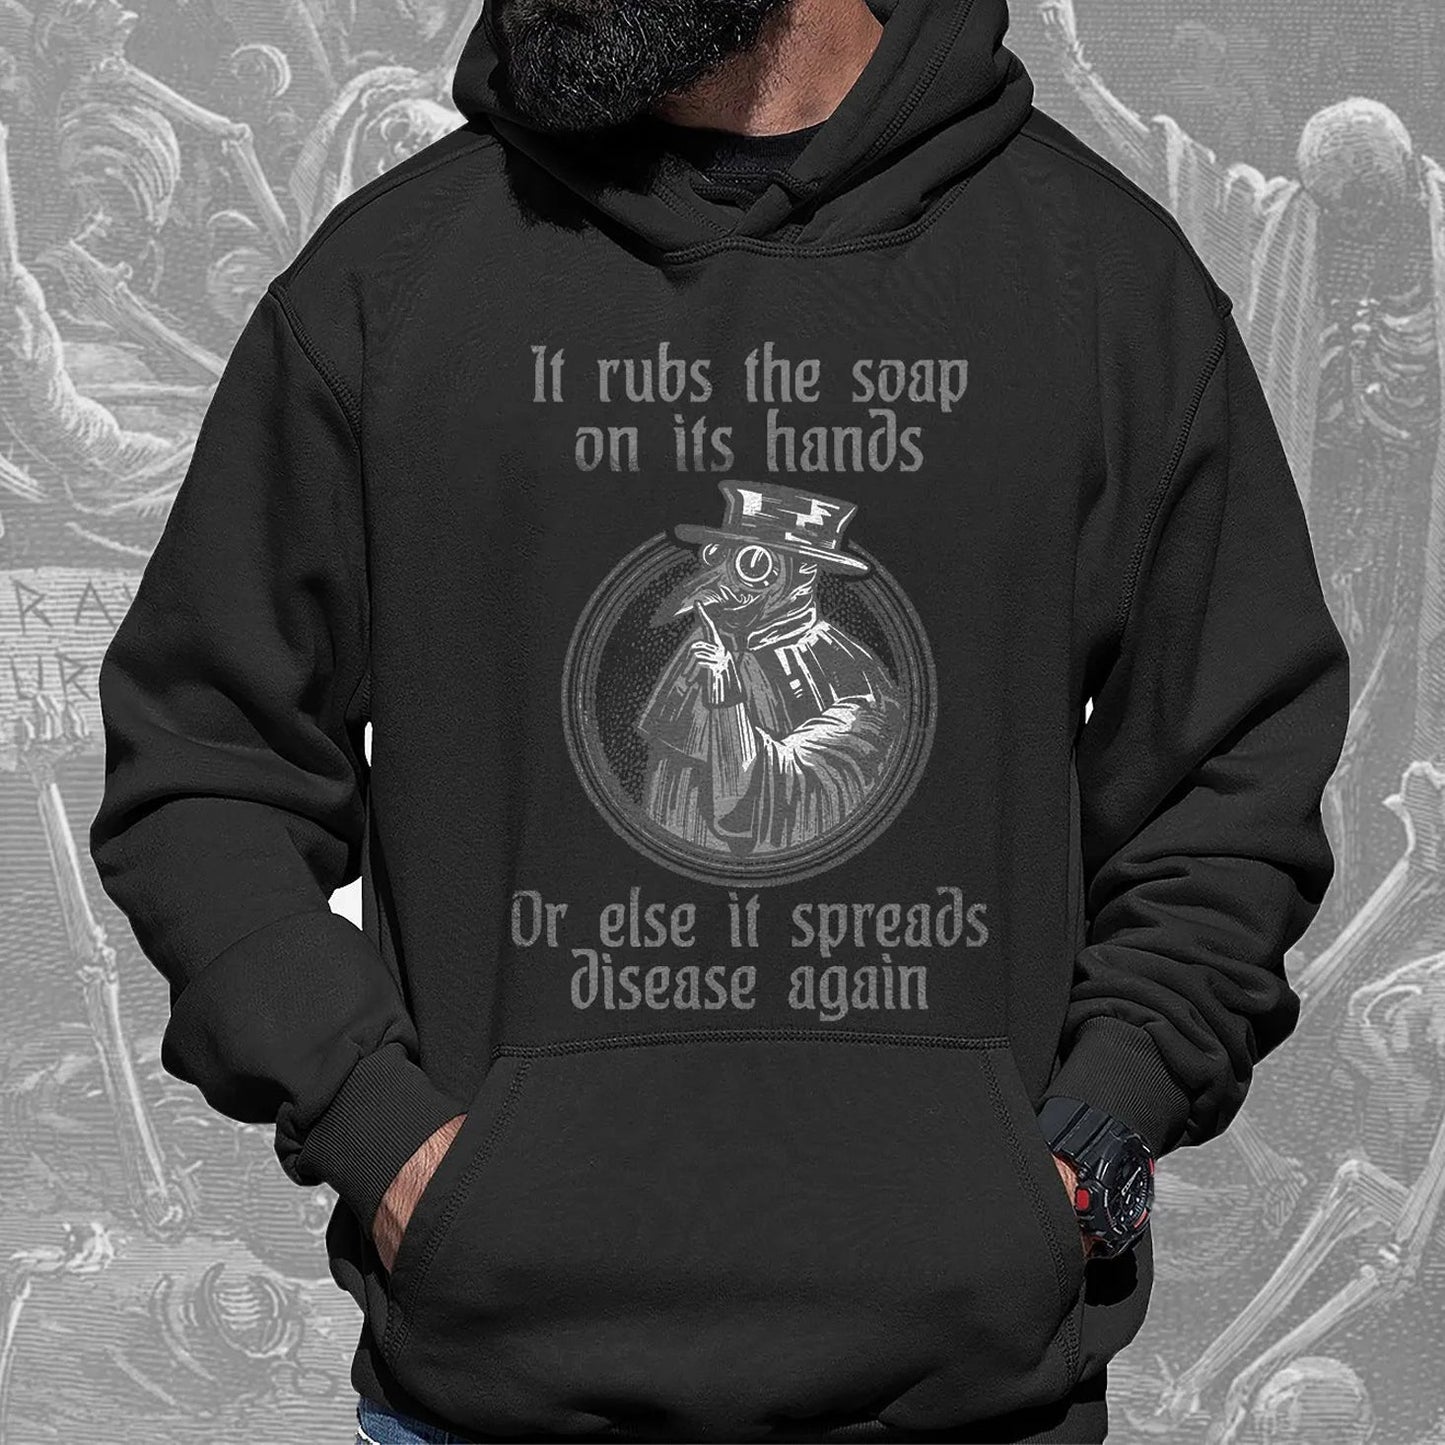 Men's Black Black Death Doctor Printed Hooded Sweatshirt